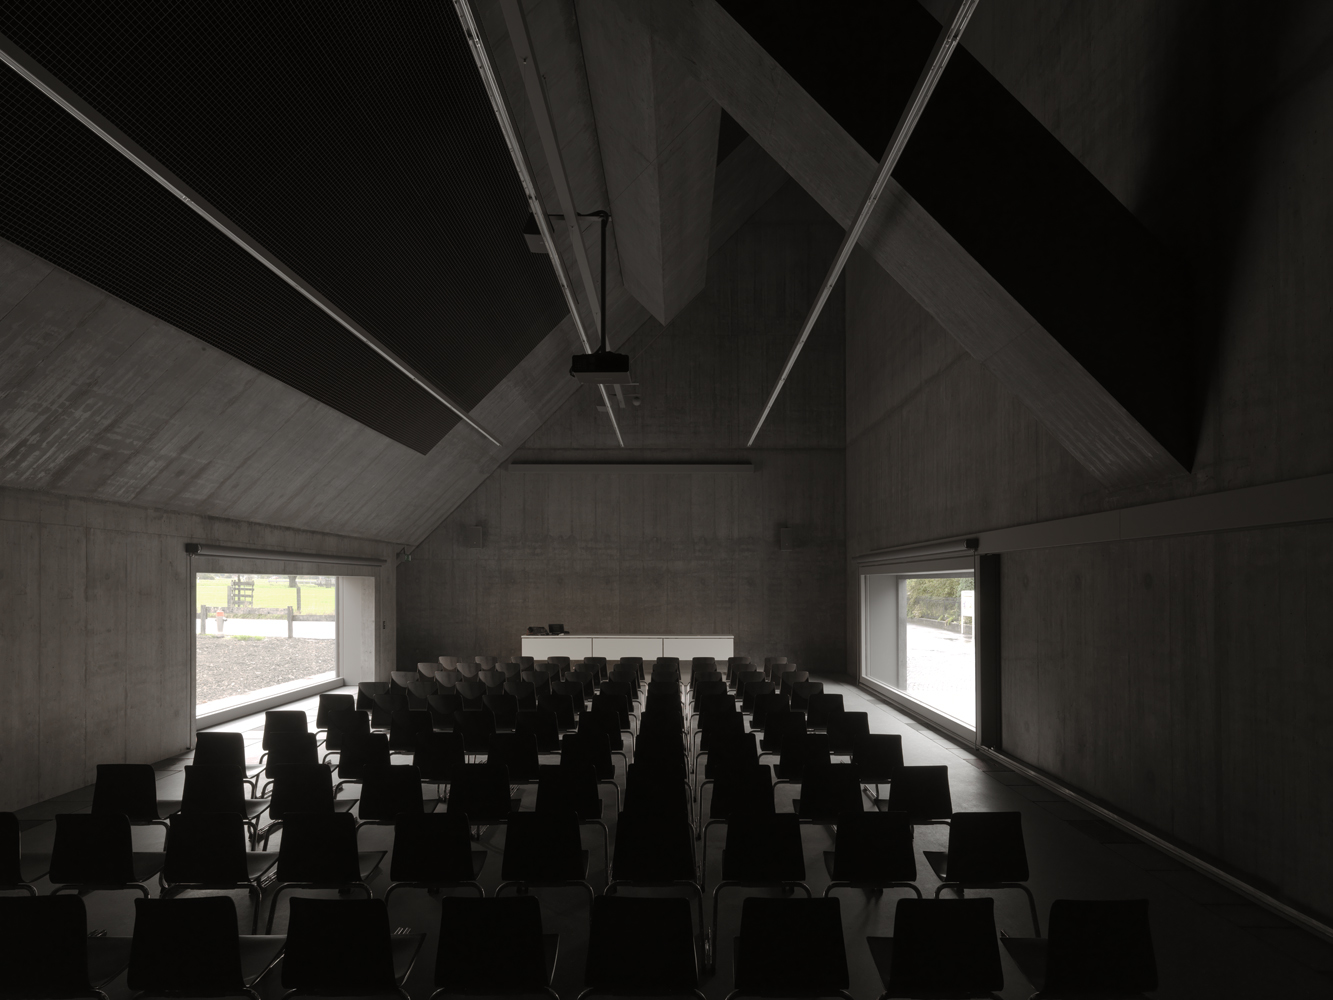 Plantahof Auditorium by Valerio Olgiati - Design Magazine | Delood